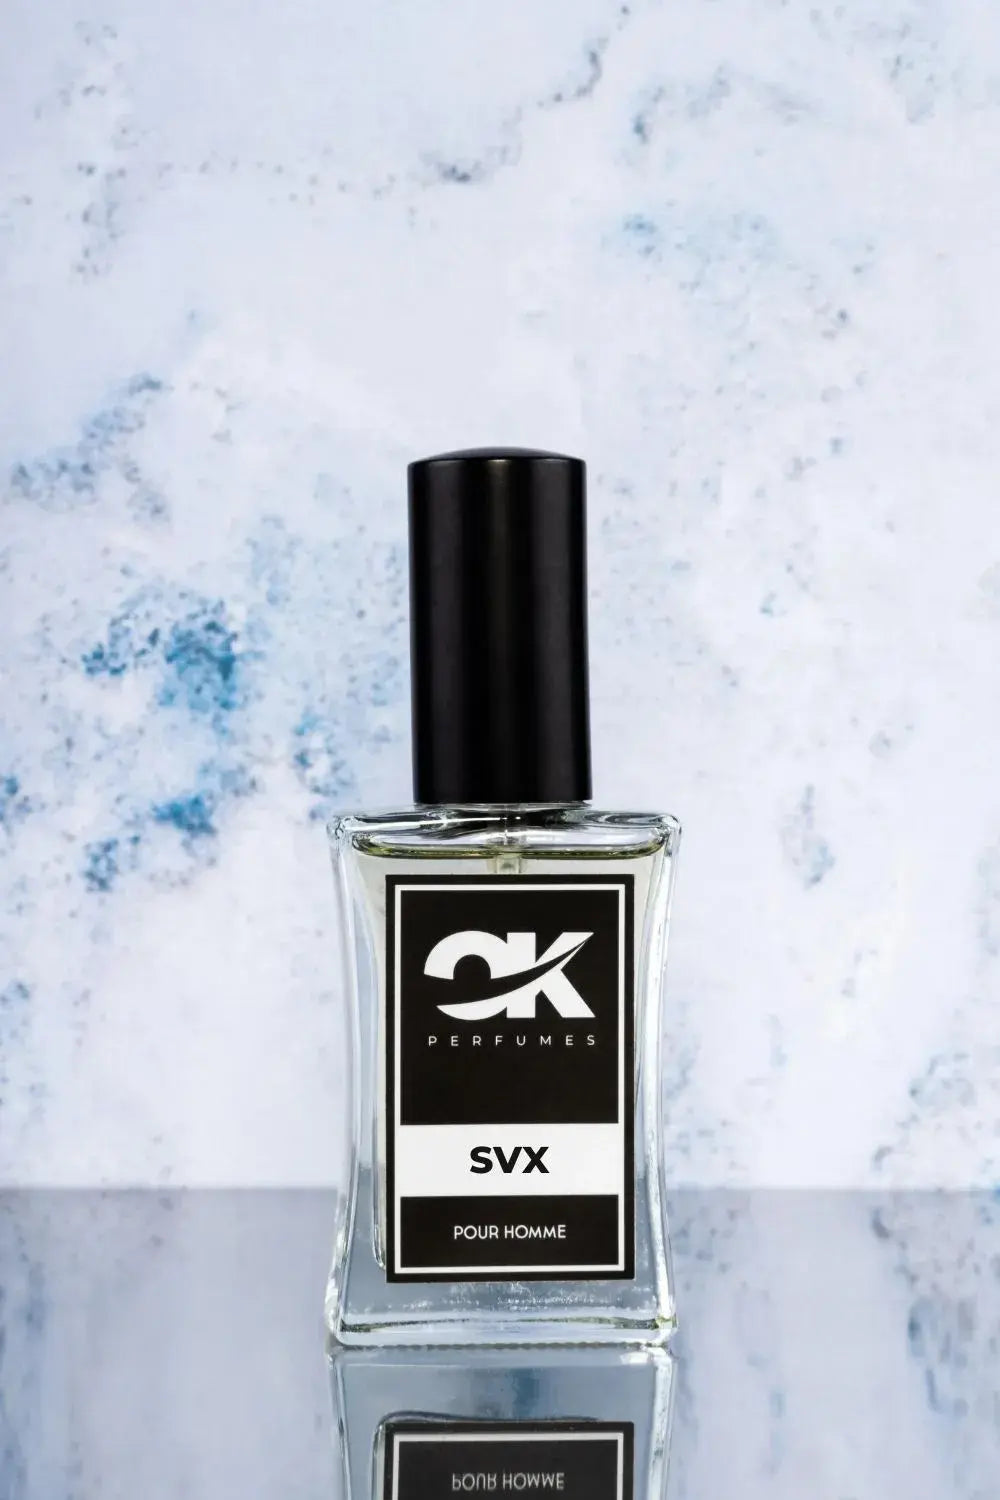 SVX - uma reminiscência do Sauvage Elixir da Dior